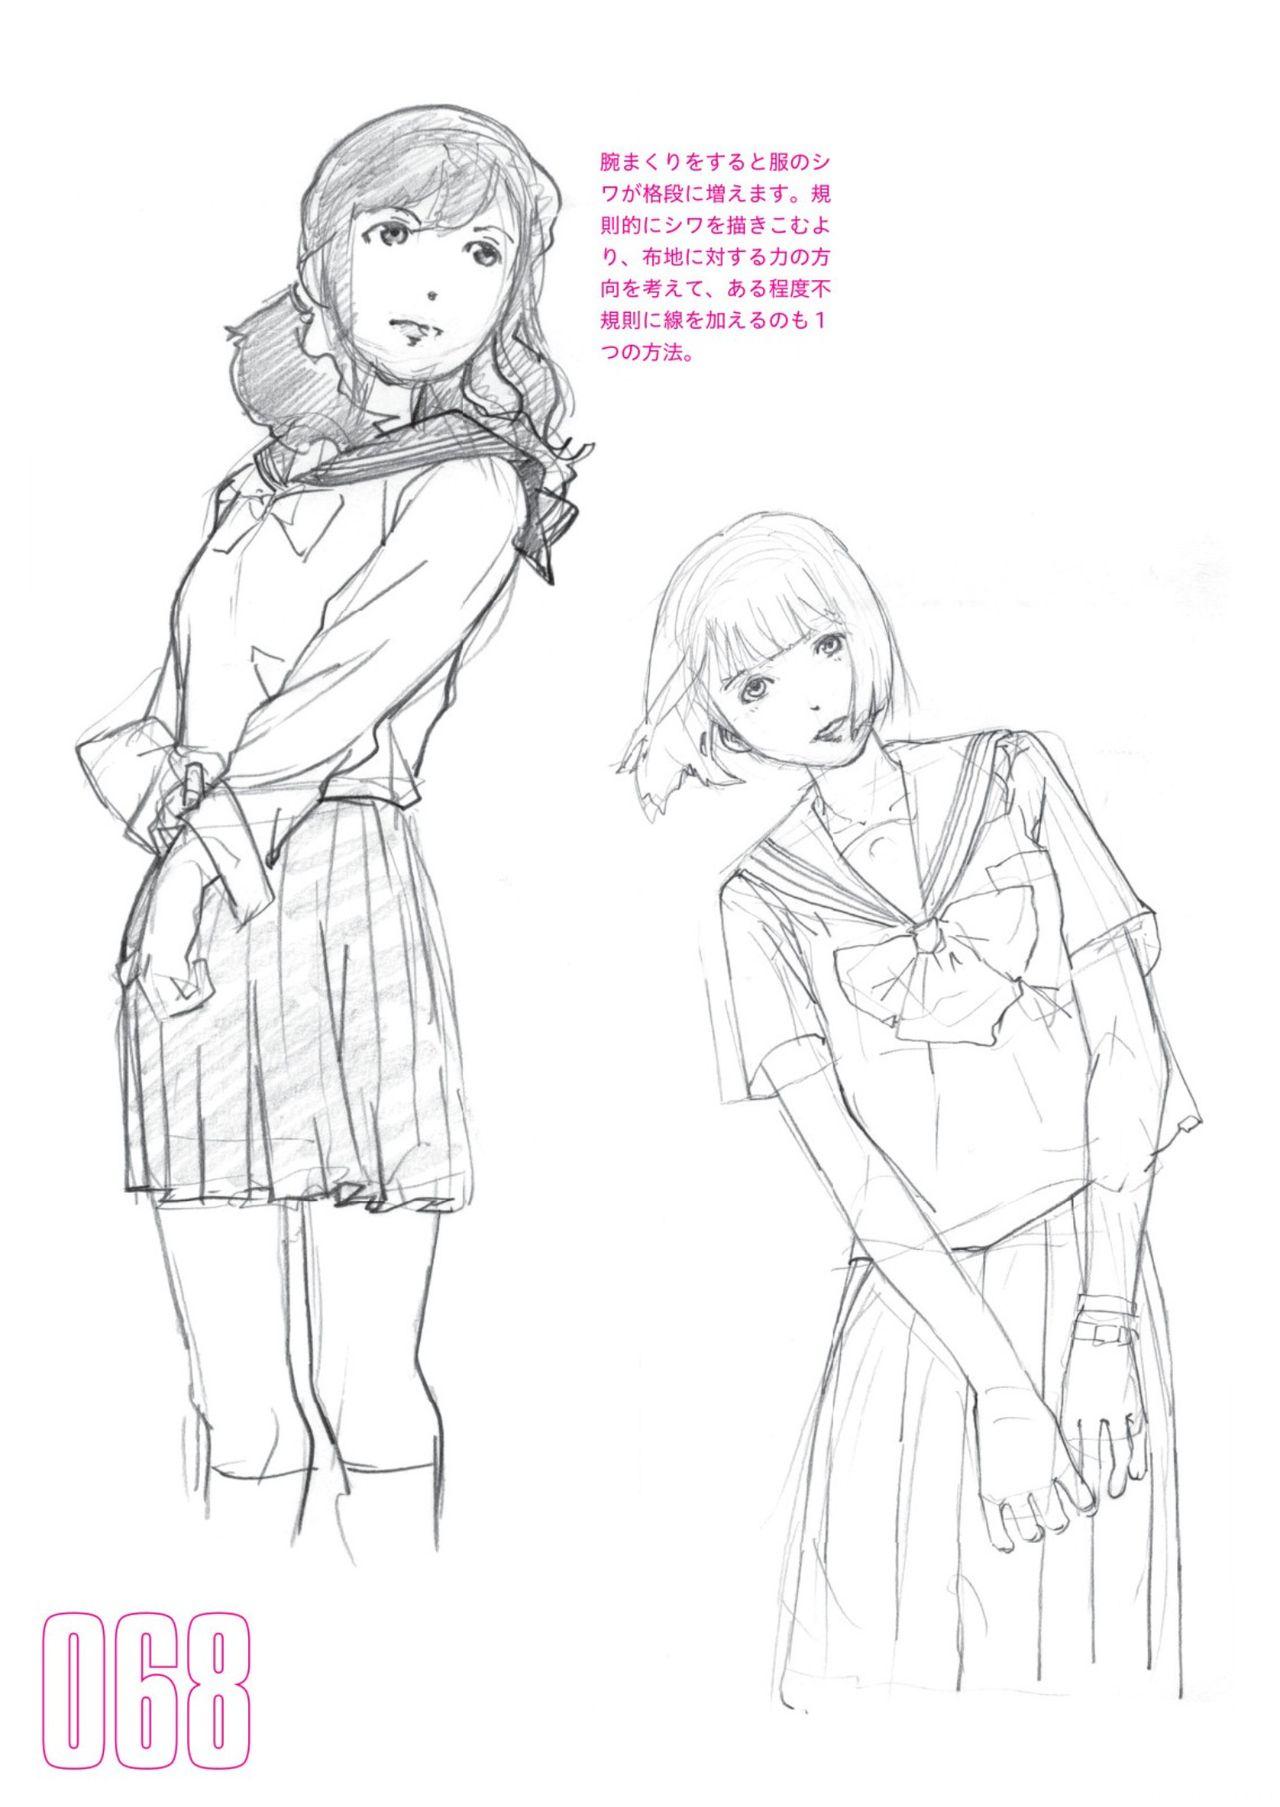 Toru Yoshida Tips for drawing women in 10 minutes 270 Uniforms 69